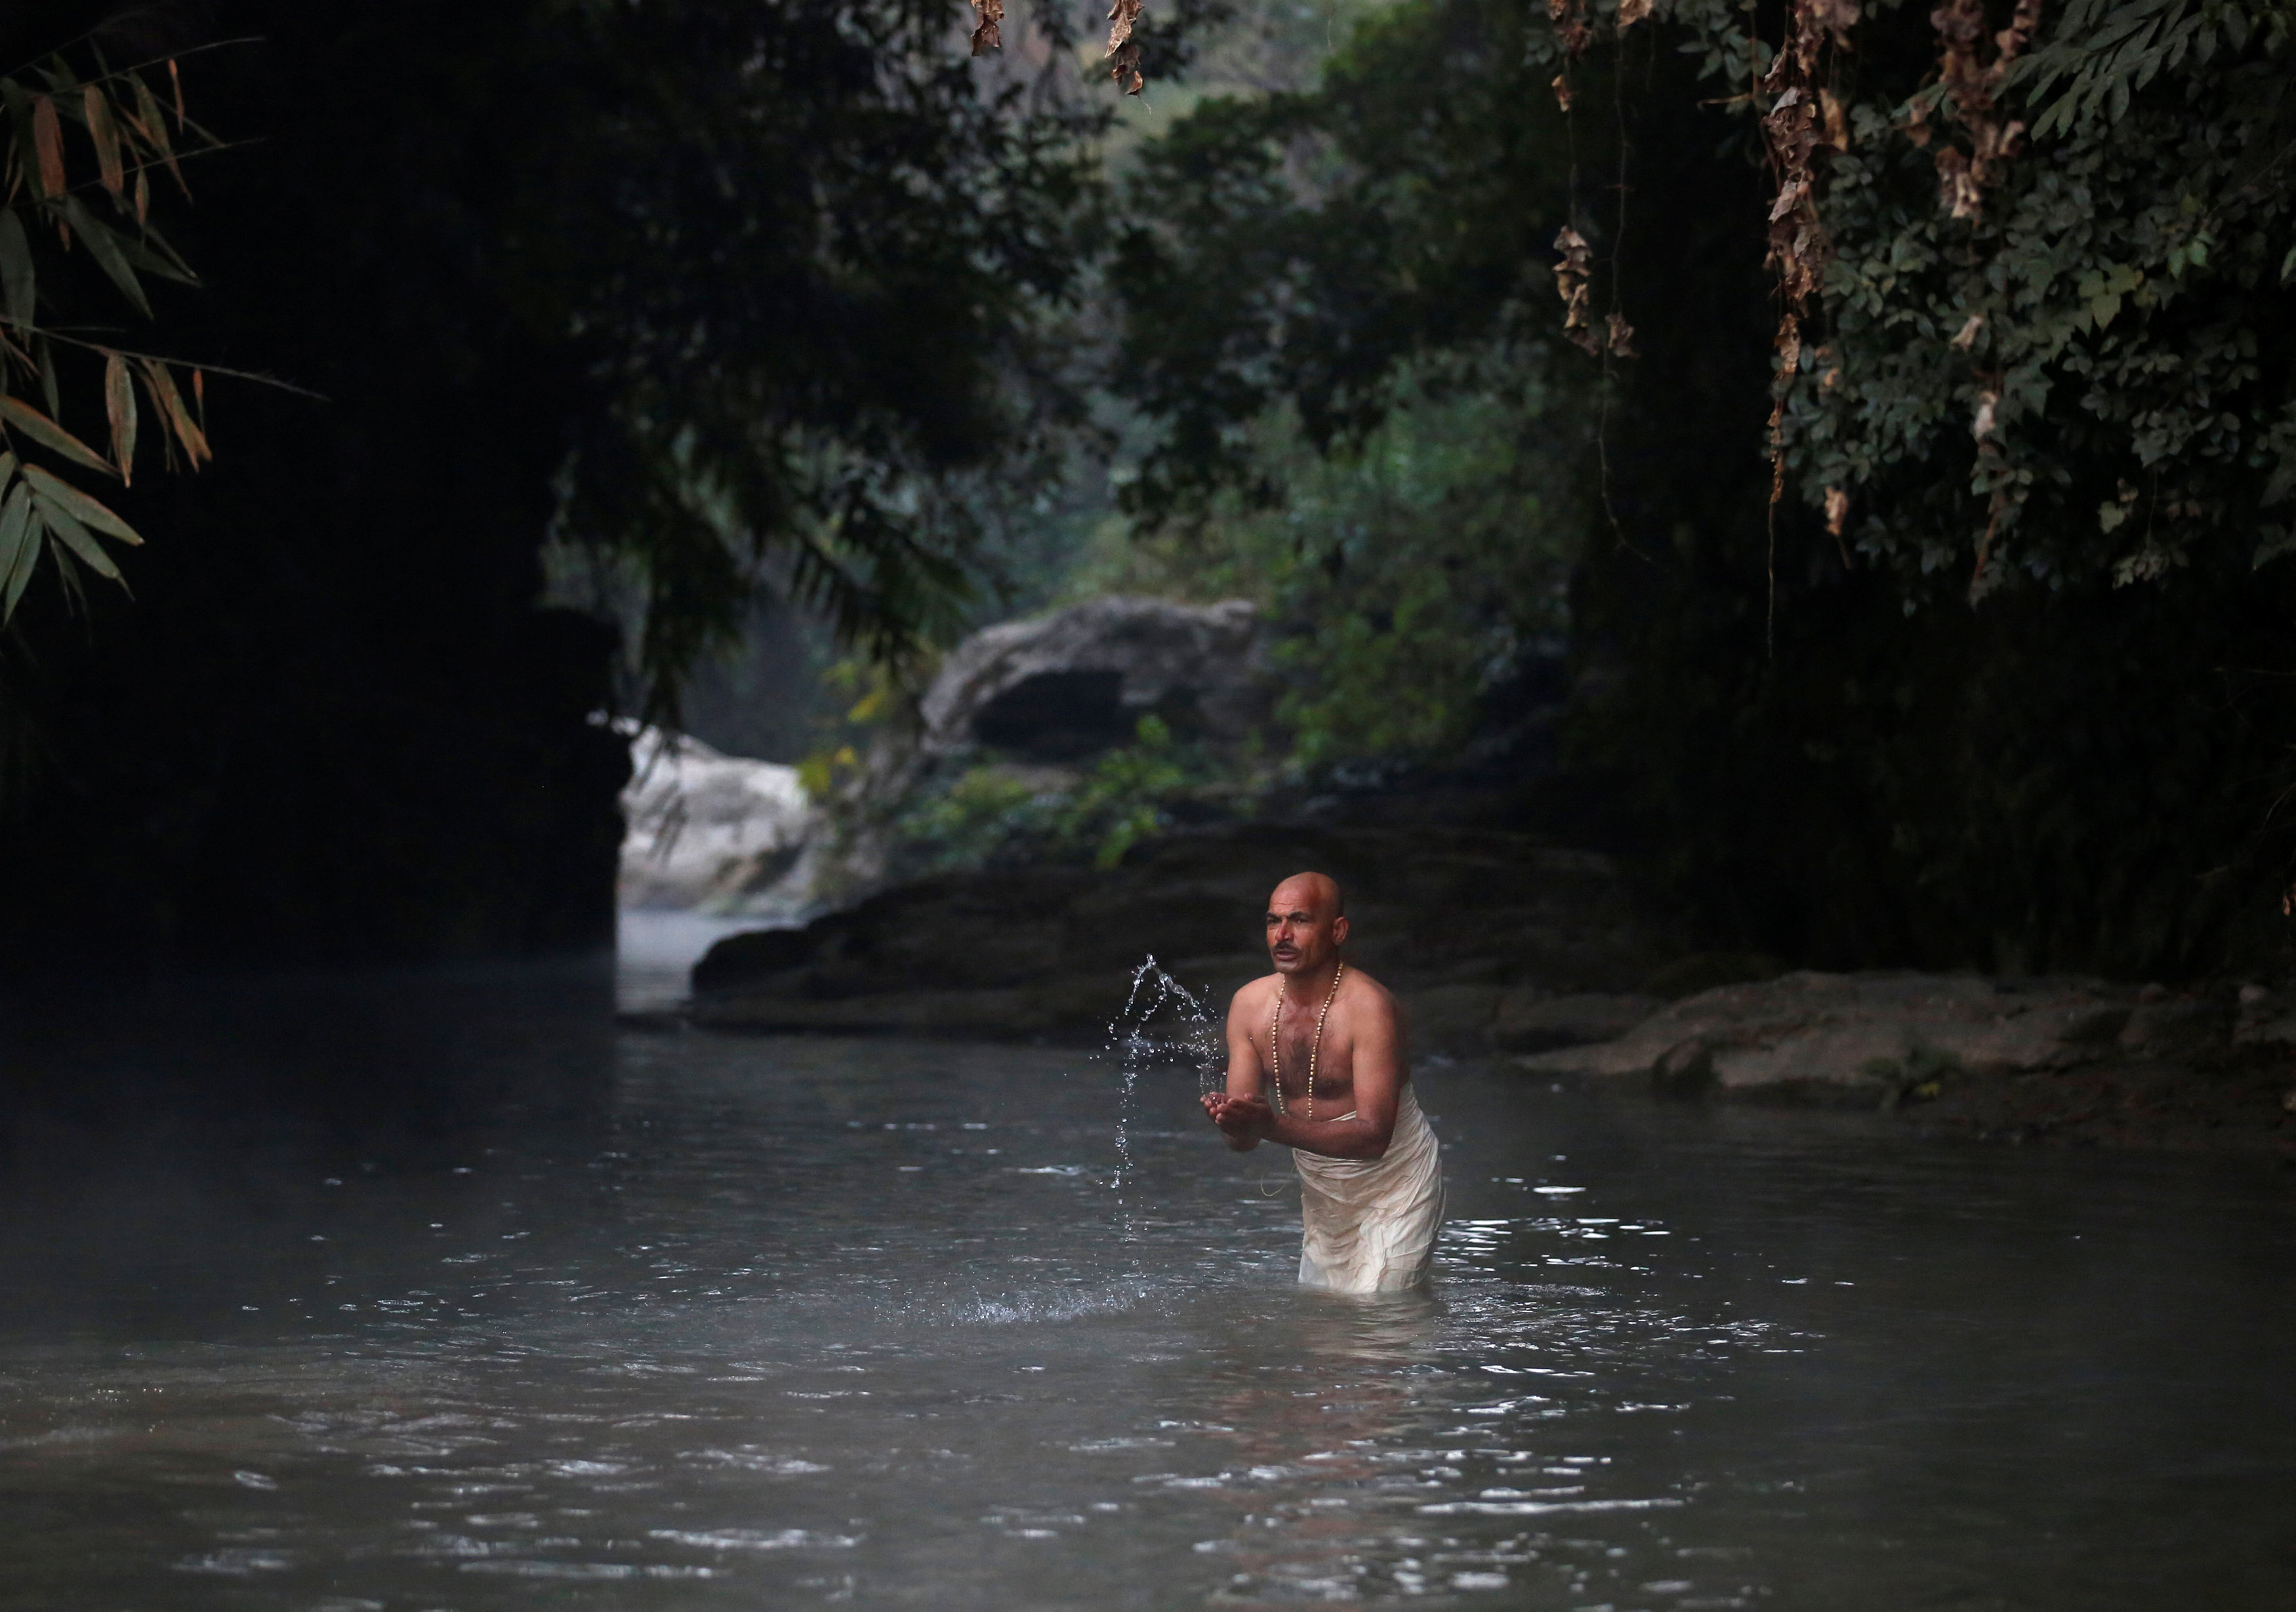 مواطن يحتفل بالمهرجان الهندوسى بالسباحة فى نهر هانومانتى